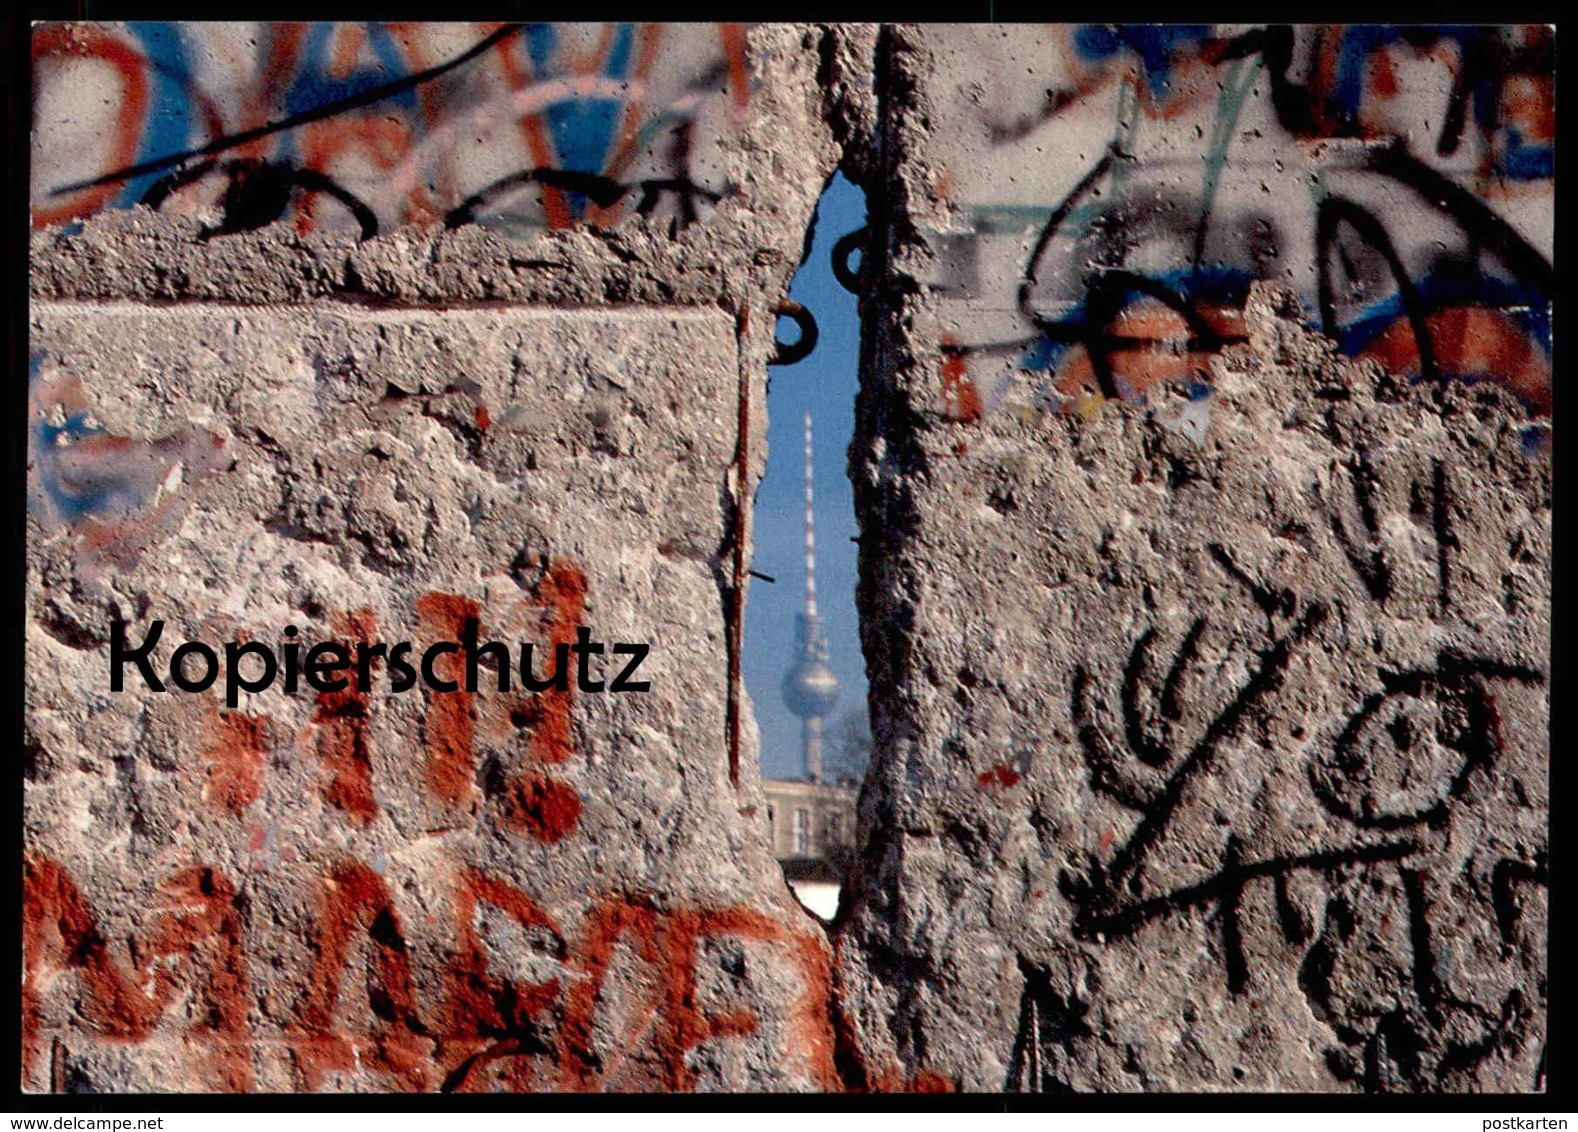 ÄLTERE POSTKARTE BERLIN BERLINER MAUER 1989 MAUERFALL FUNKTURM LE MUR THE WALL Ansichtskarte  Postcard - Berlin Wall